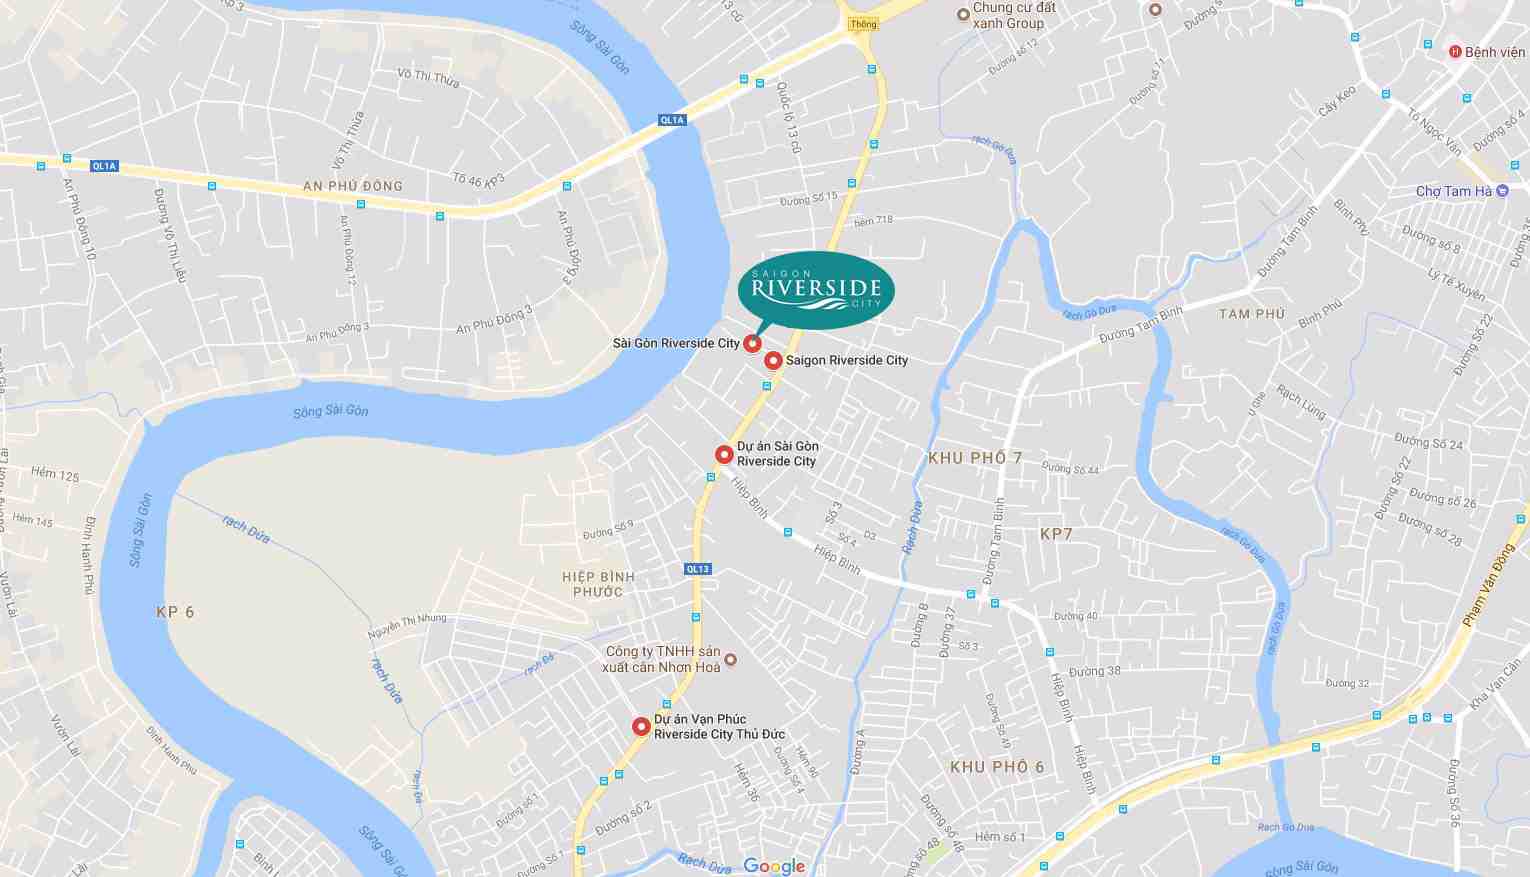 Vị trí Saigon Riverisde City Quận Quốc Lộ 13 Thủ Đức